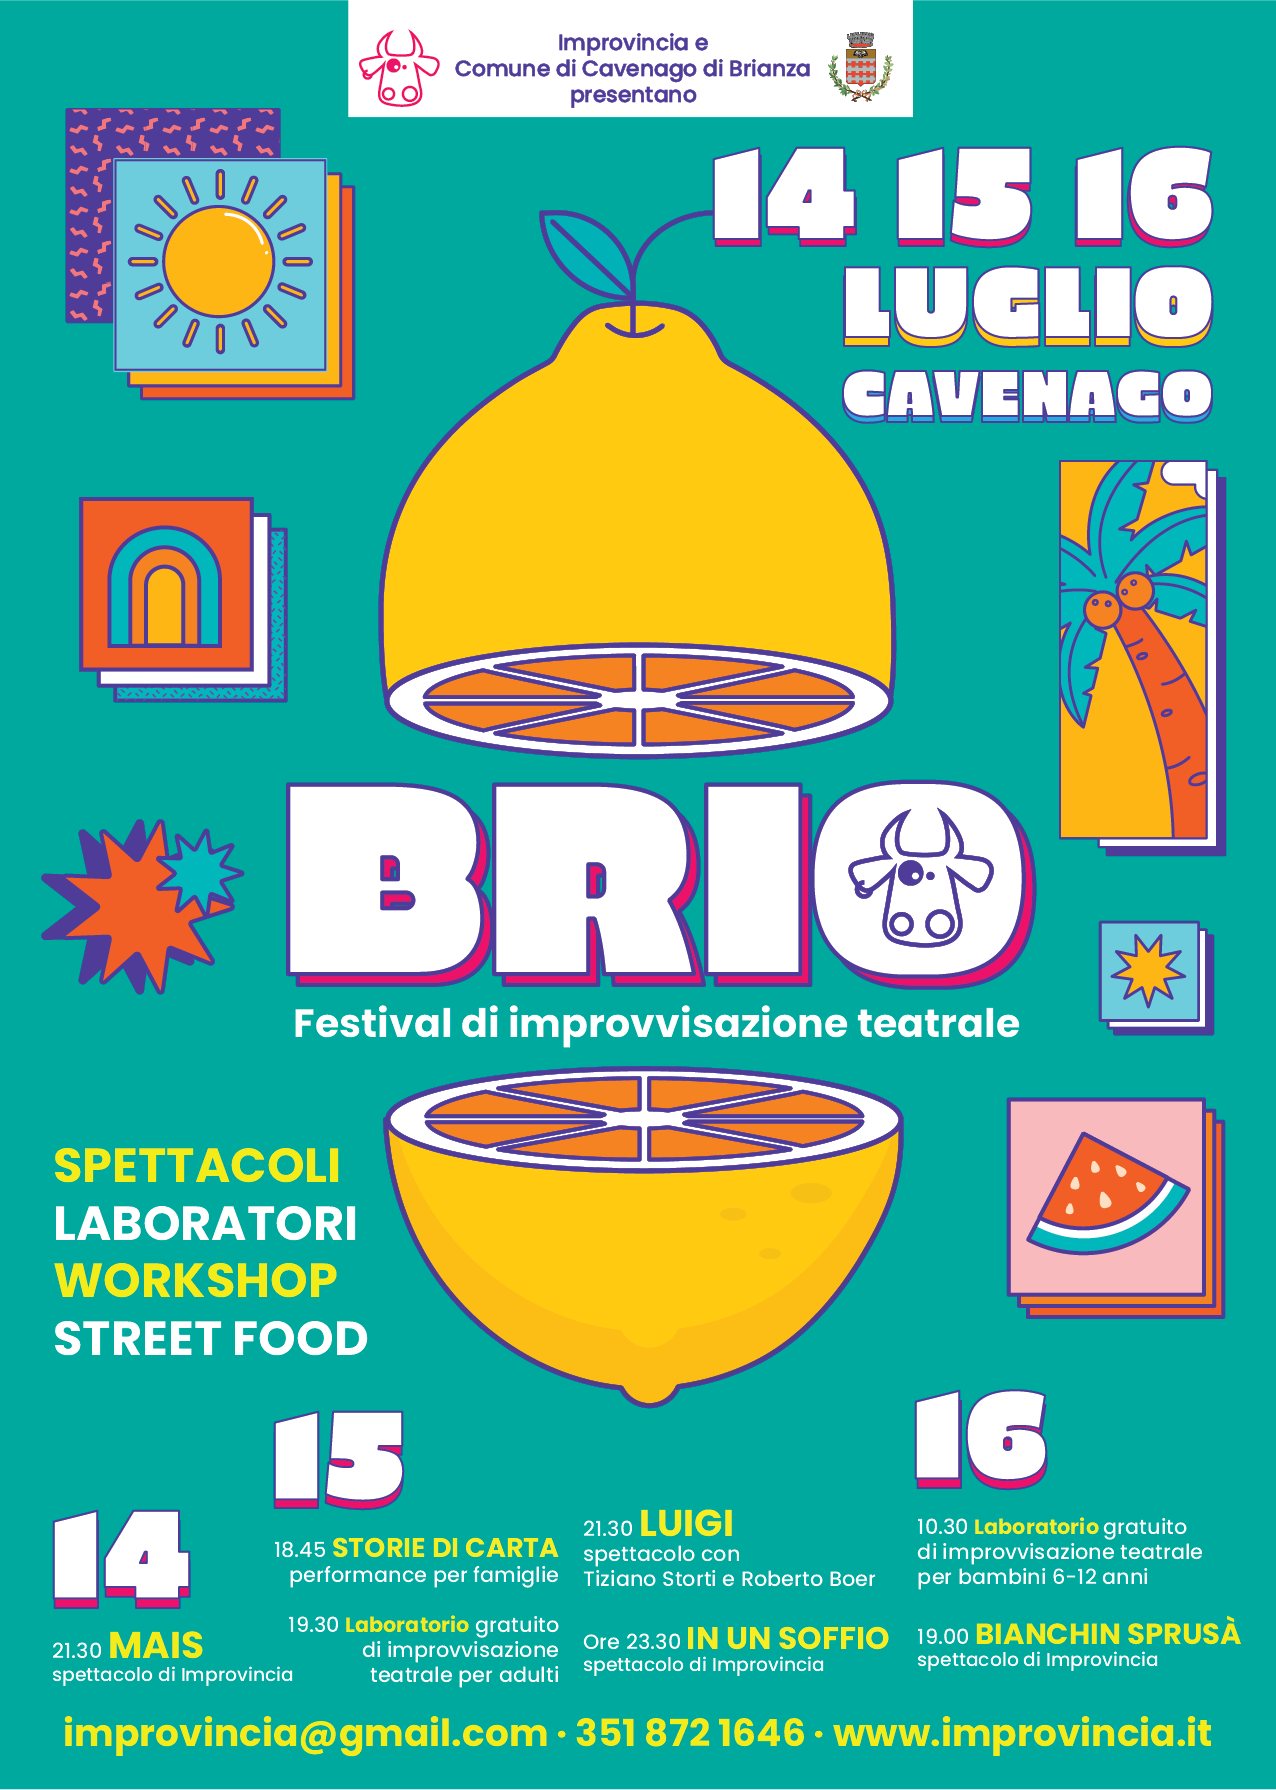 BRIO, festival di improvvisazione teatrale in Brianza